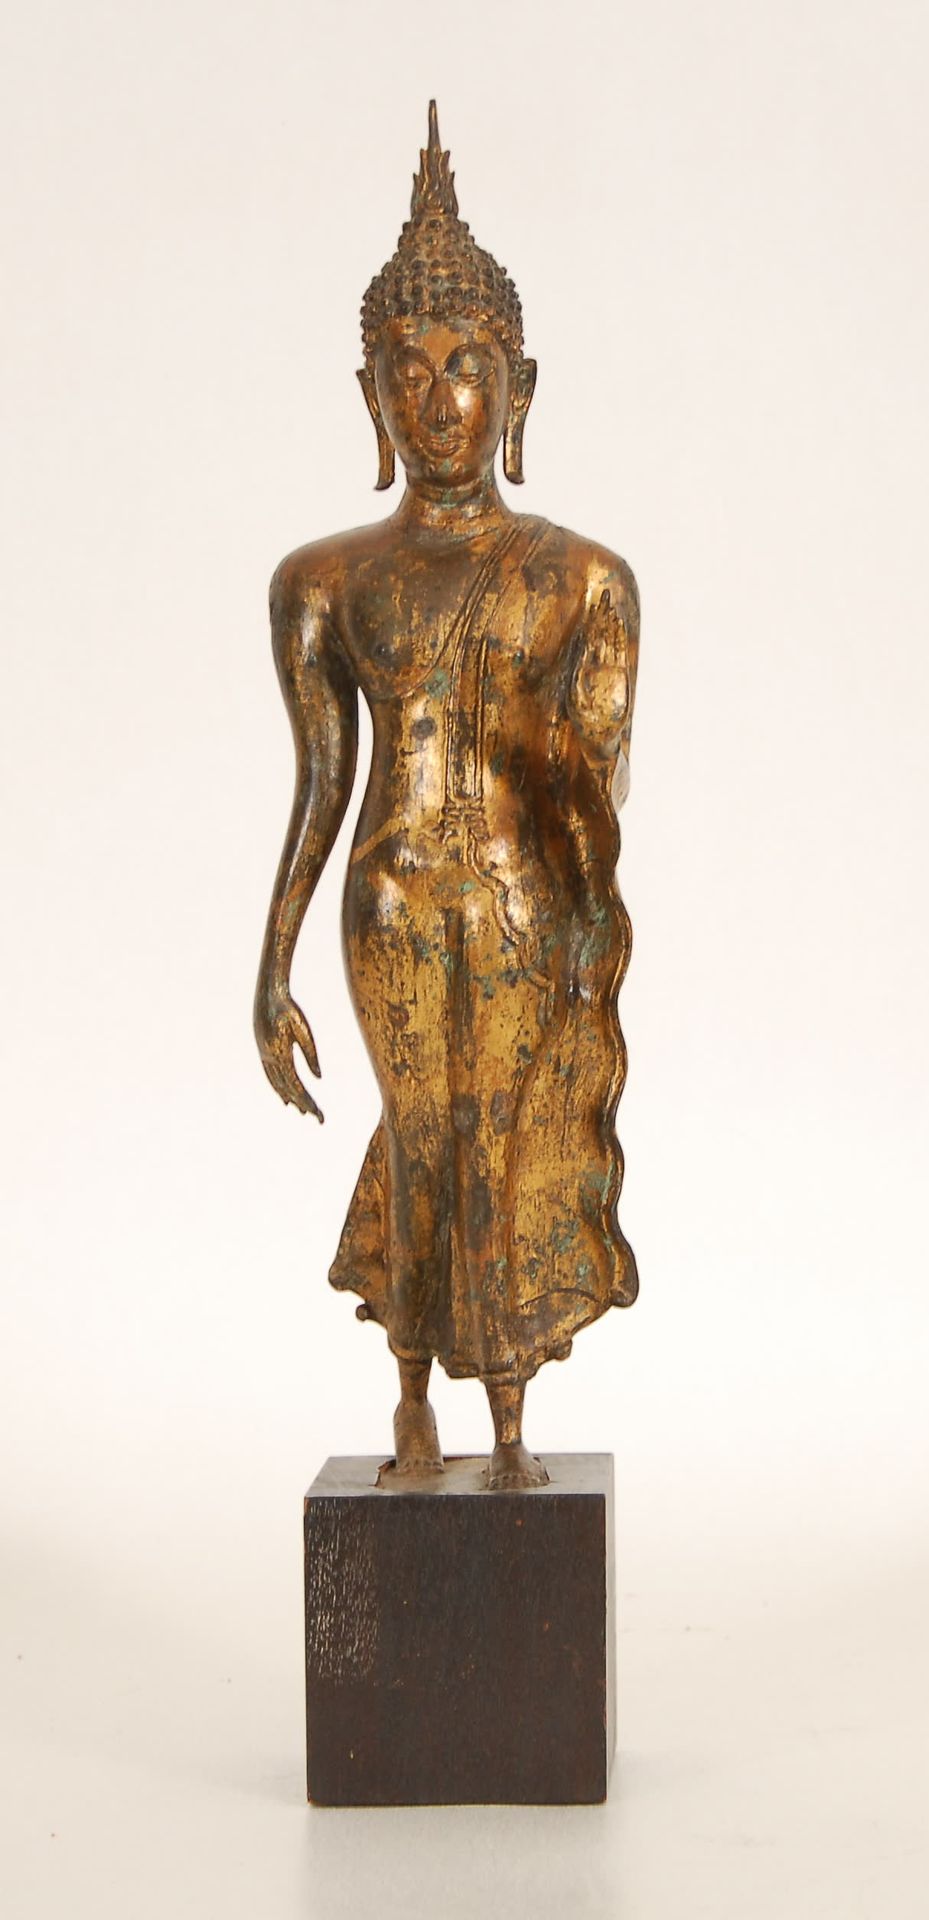 Null Stehender Buddha
Vergoldete Bronze. Thailand.
H. 41 cm.